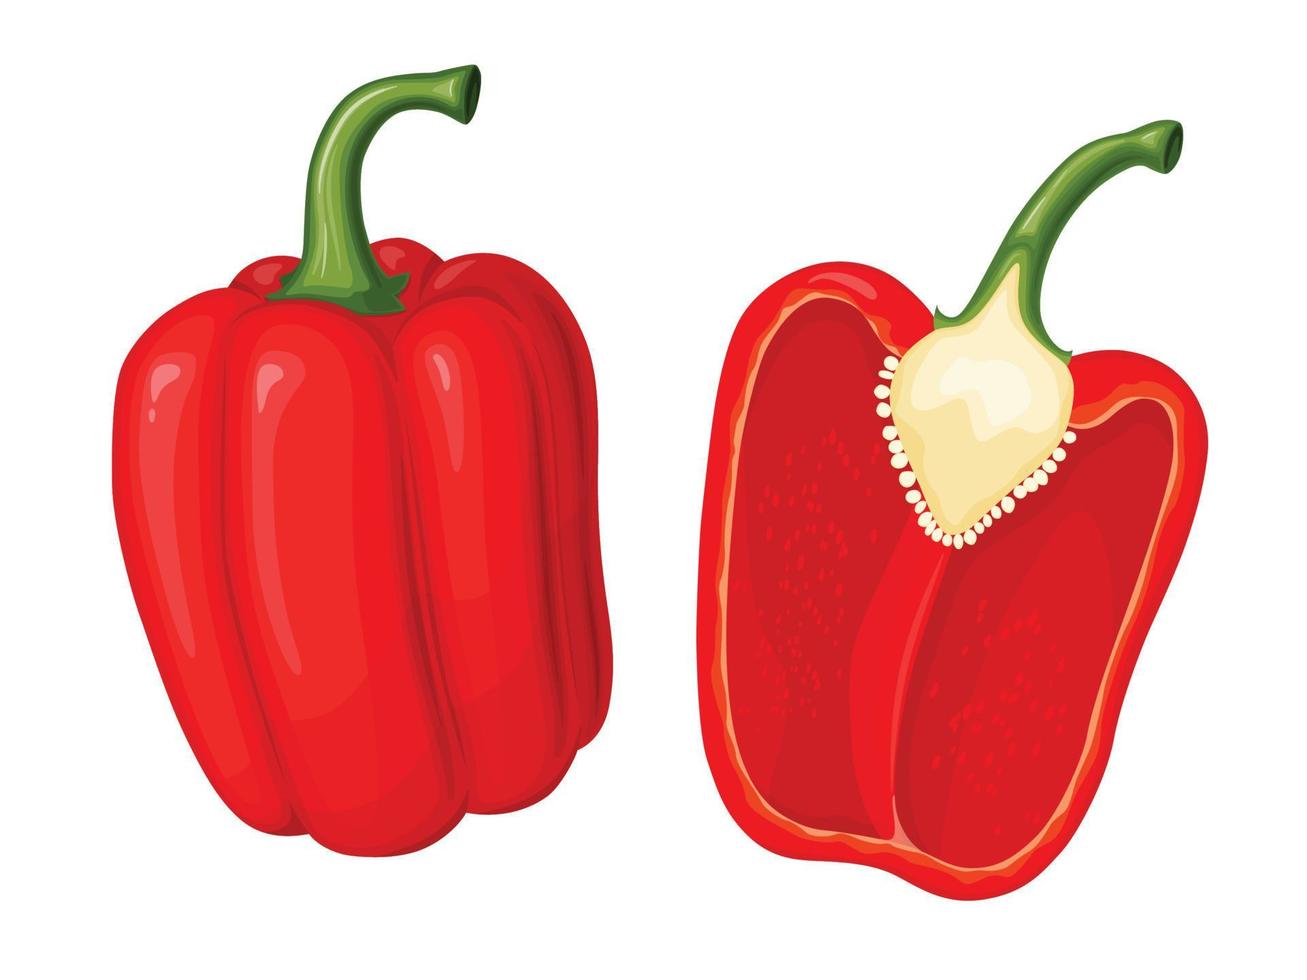 pimentão vermelho doce. ilustração de vegetais em estilo simples simples dos desenhos animados. vetor